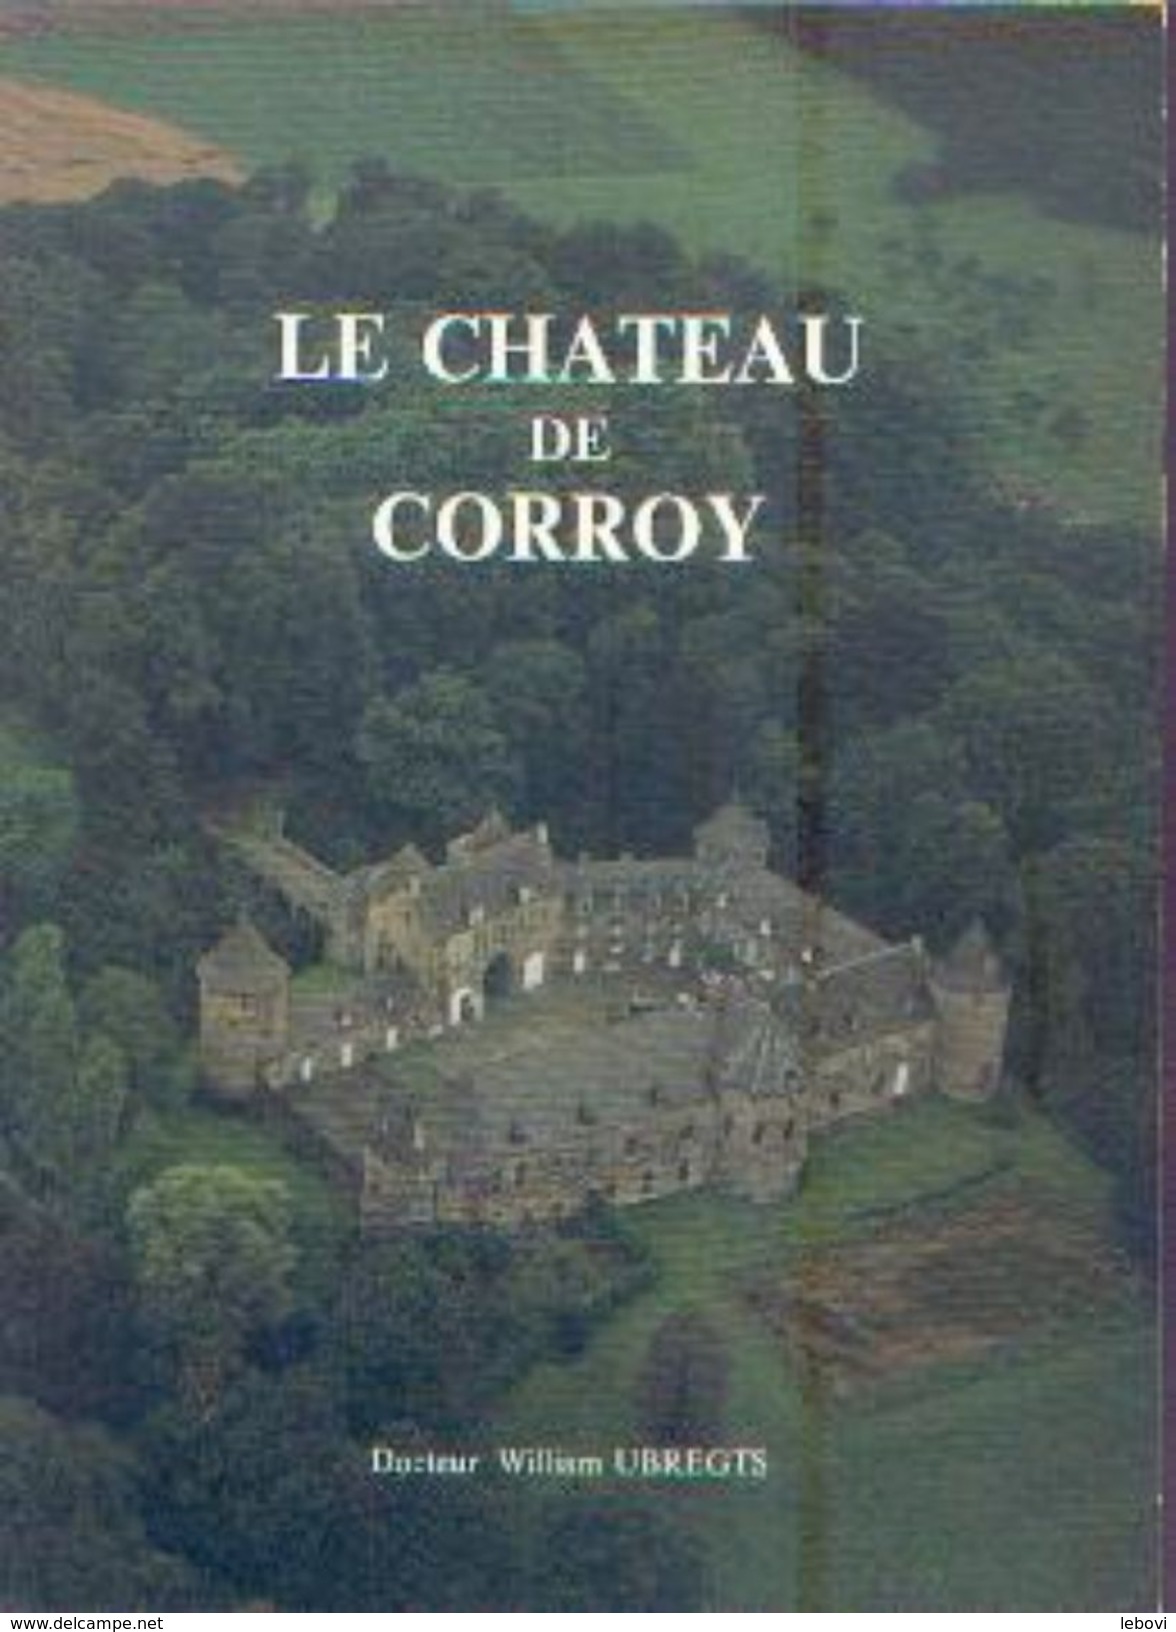 « Le Château De CORROY » UBREGTS, W. &ndash; Ed. Commune De Gembloux-sur-Orneau (1978)) - Belgium